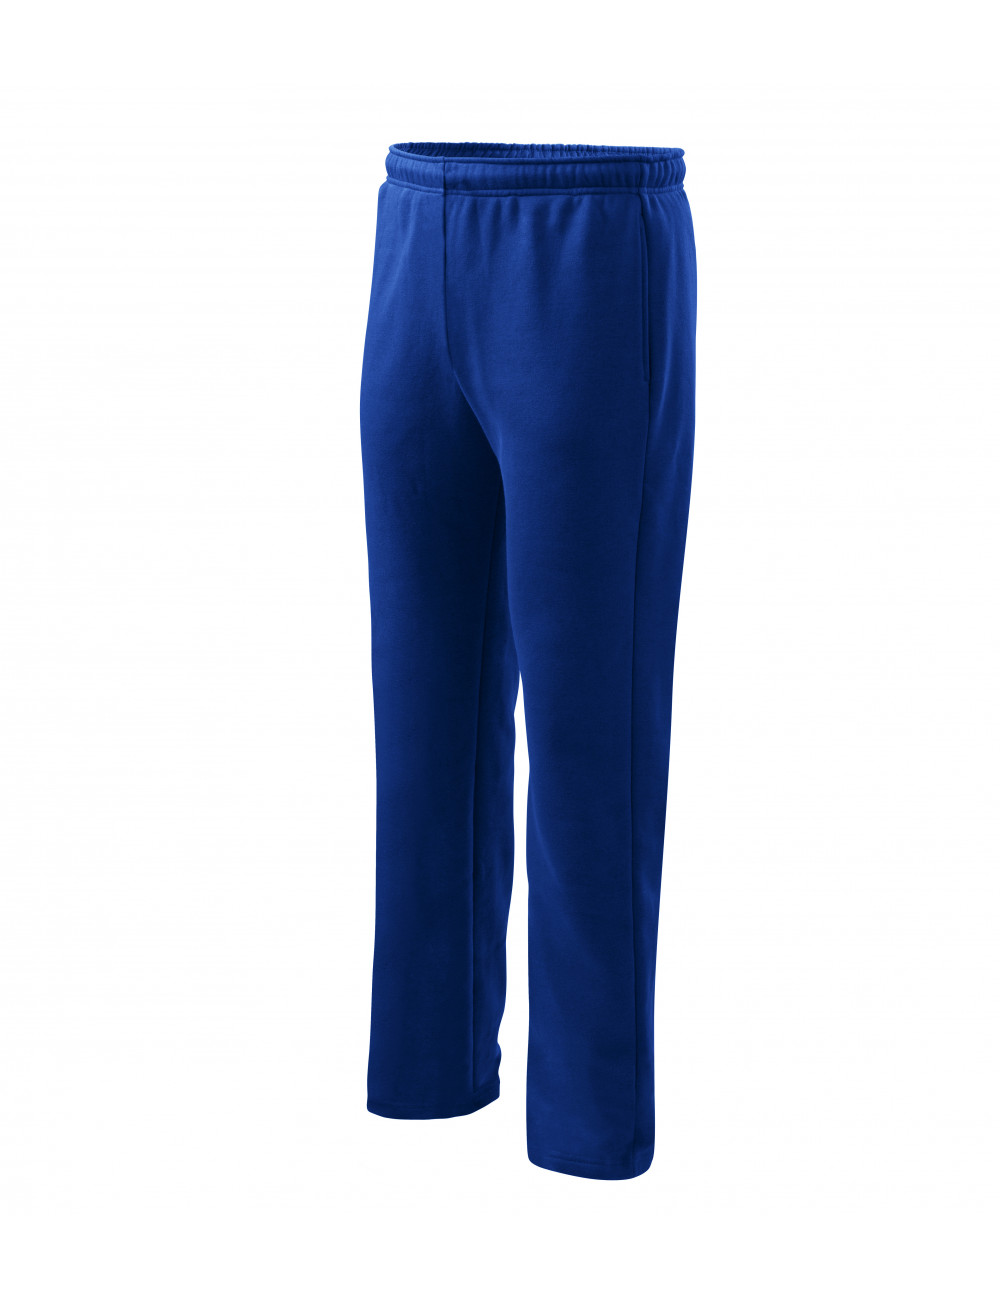 Sweatpants for men/children comfort 607 cornflower blue Adler Malfini